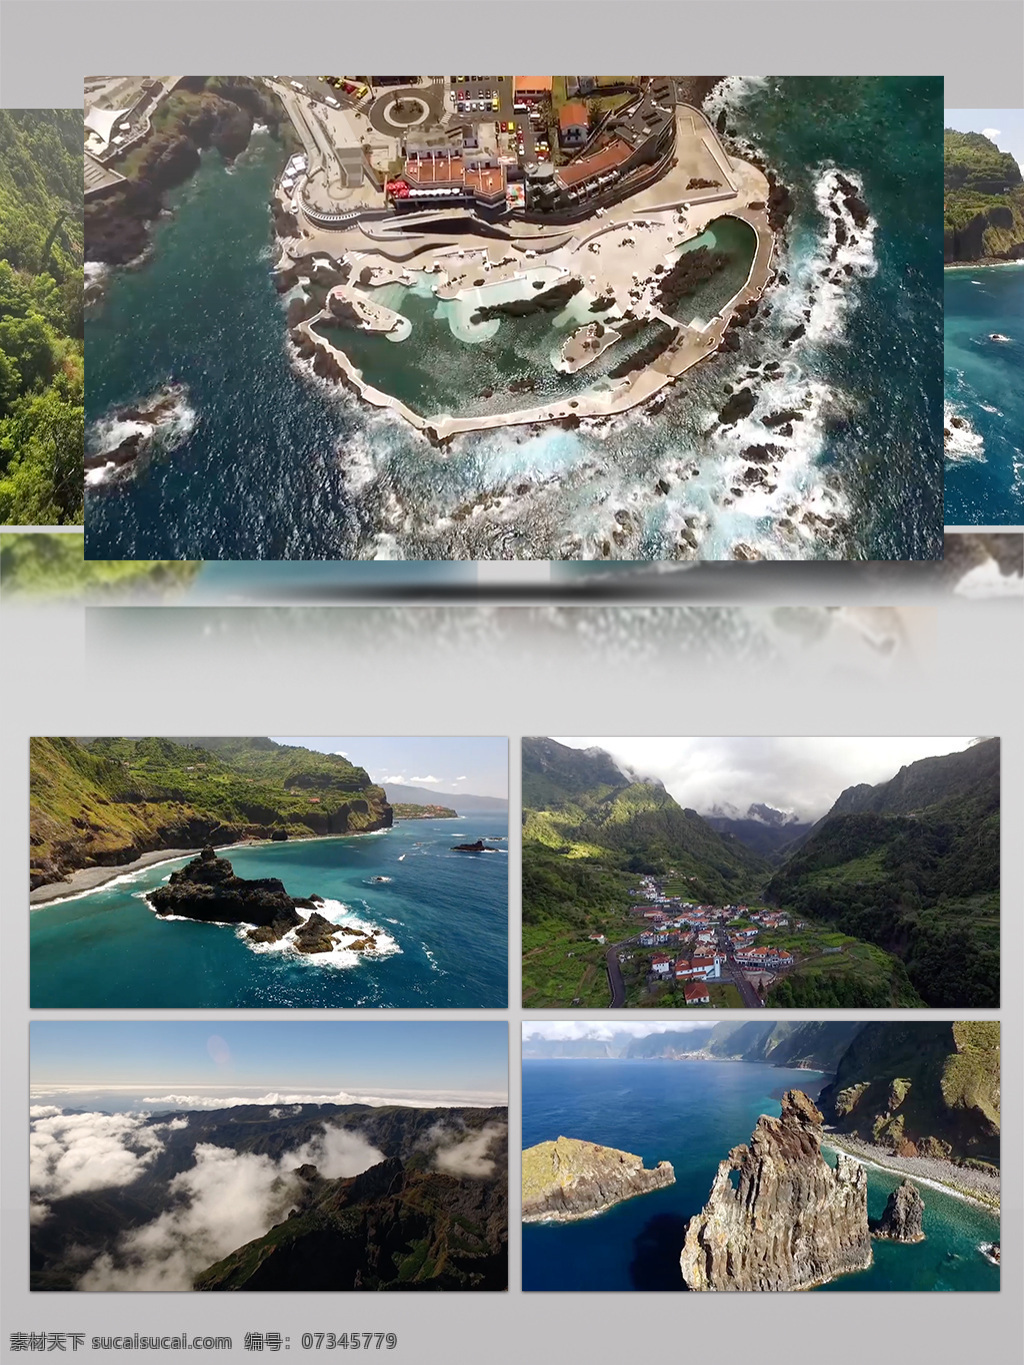 大西洋 马德拉 群岛 空中 旅行 高清 实拍 2018年 城市景观 高清实拍 国外风情 航拍 纪录片 景点 旅游城市 马德拉群岛 实拍视频 实拍素材